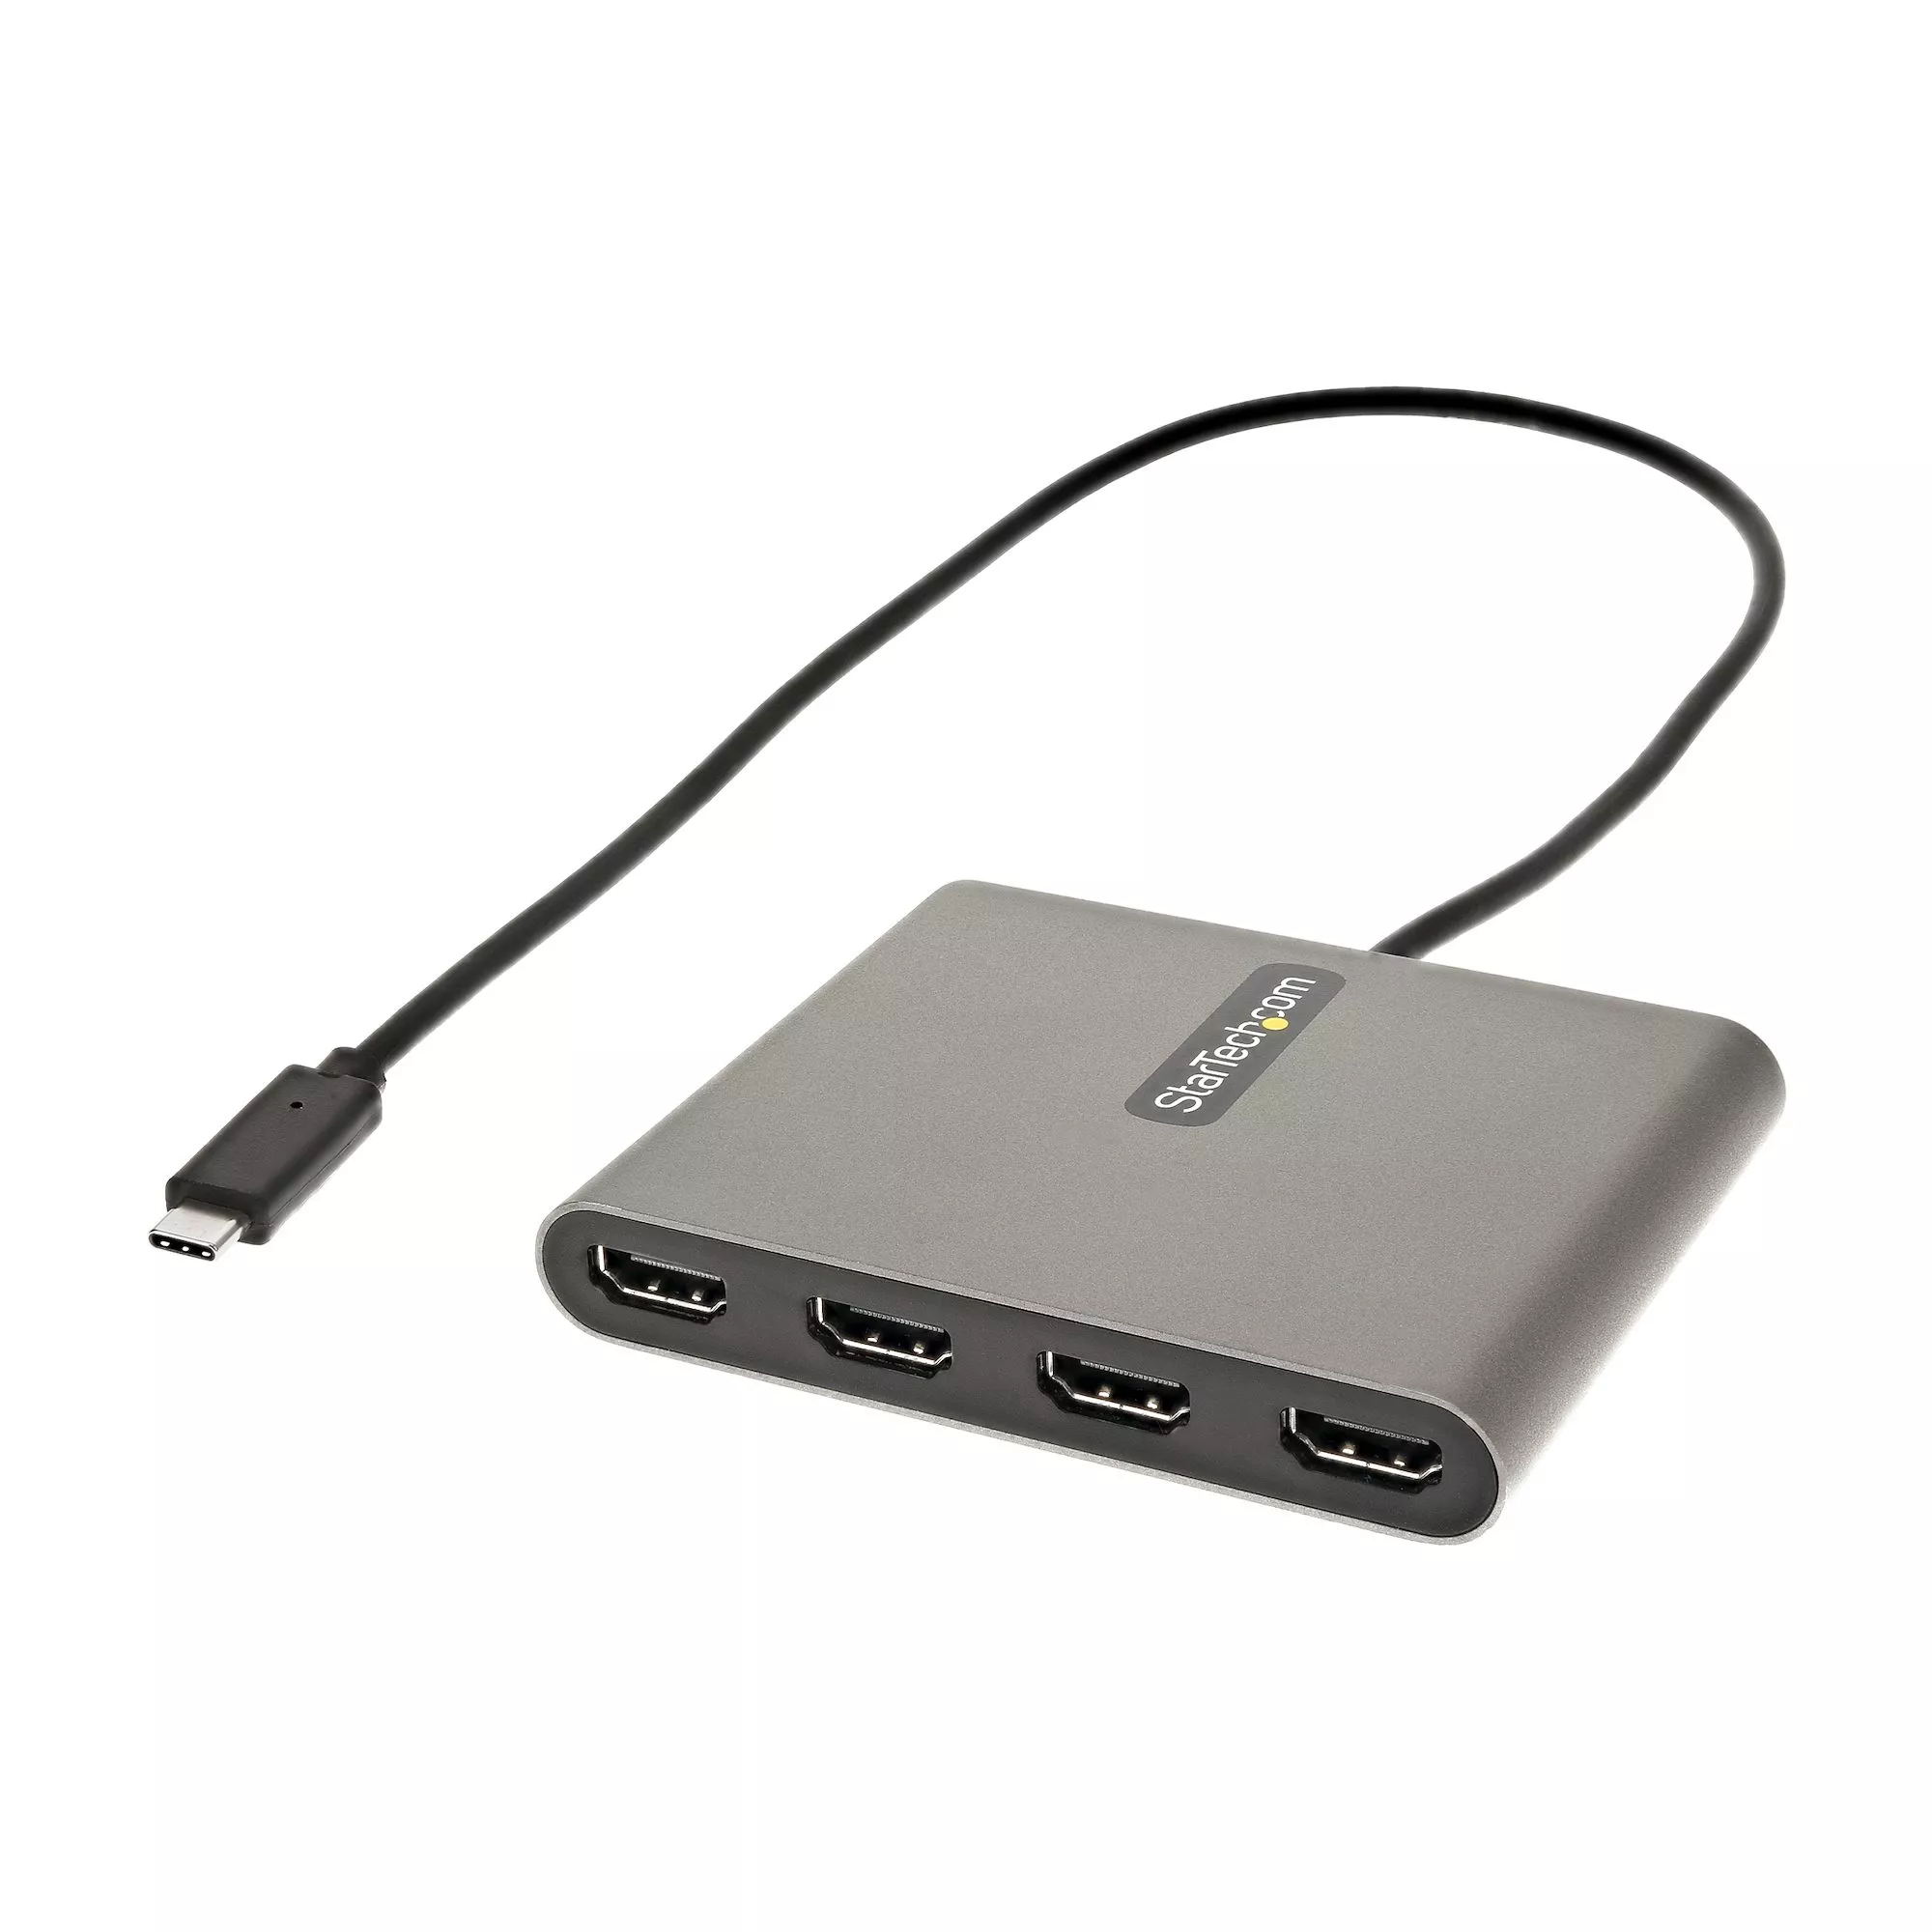 Revendeur officiel StarTech.com Adaptateur USB C vers 4 HDMI - Carte Vidéo